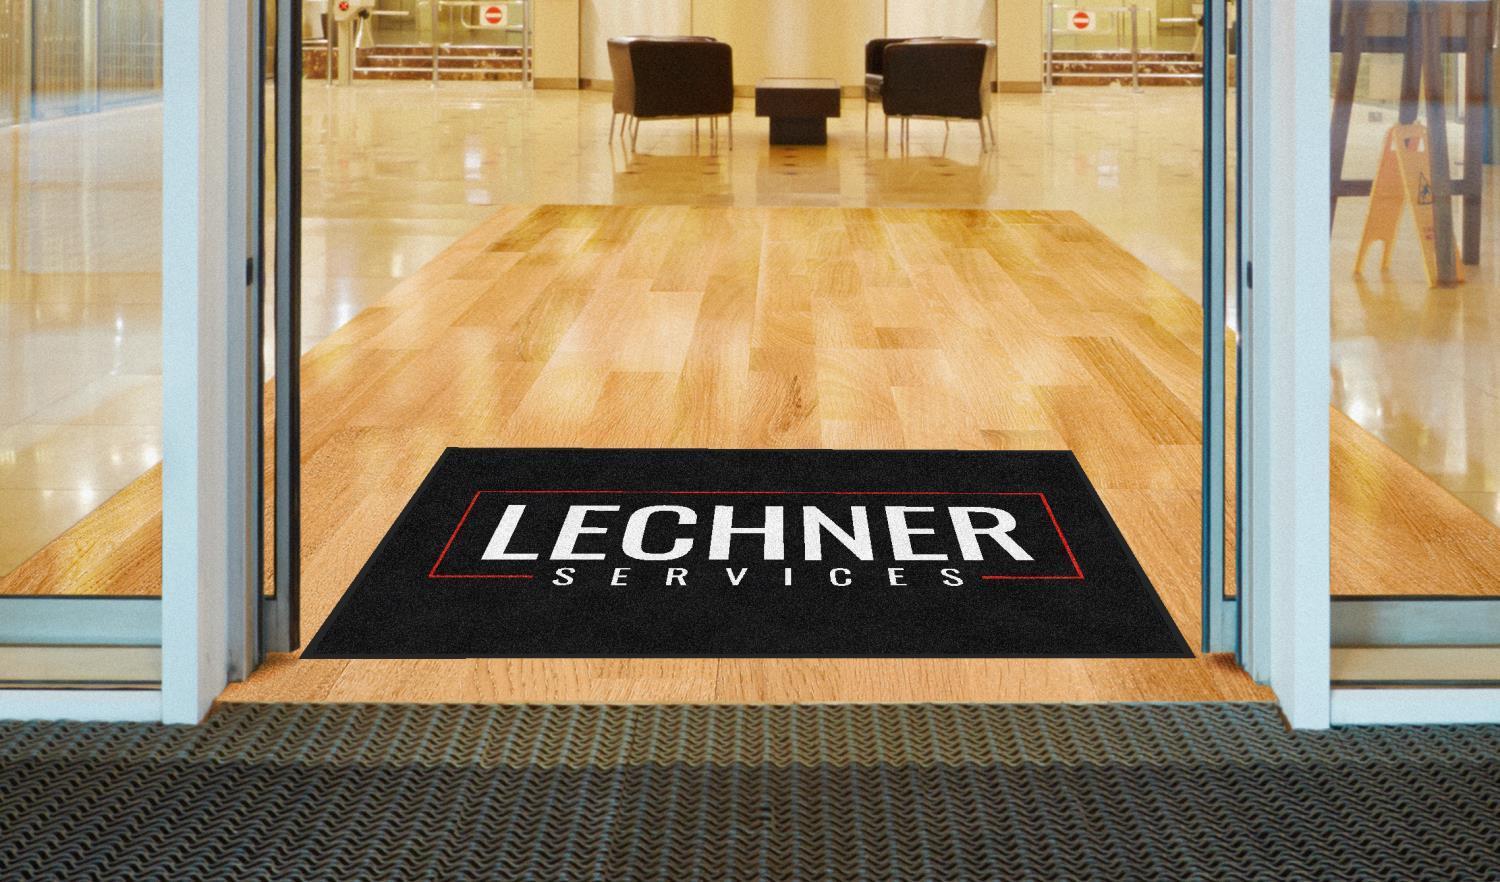 Lechner Services Logo Mat At An Entrance Door